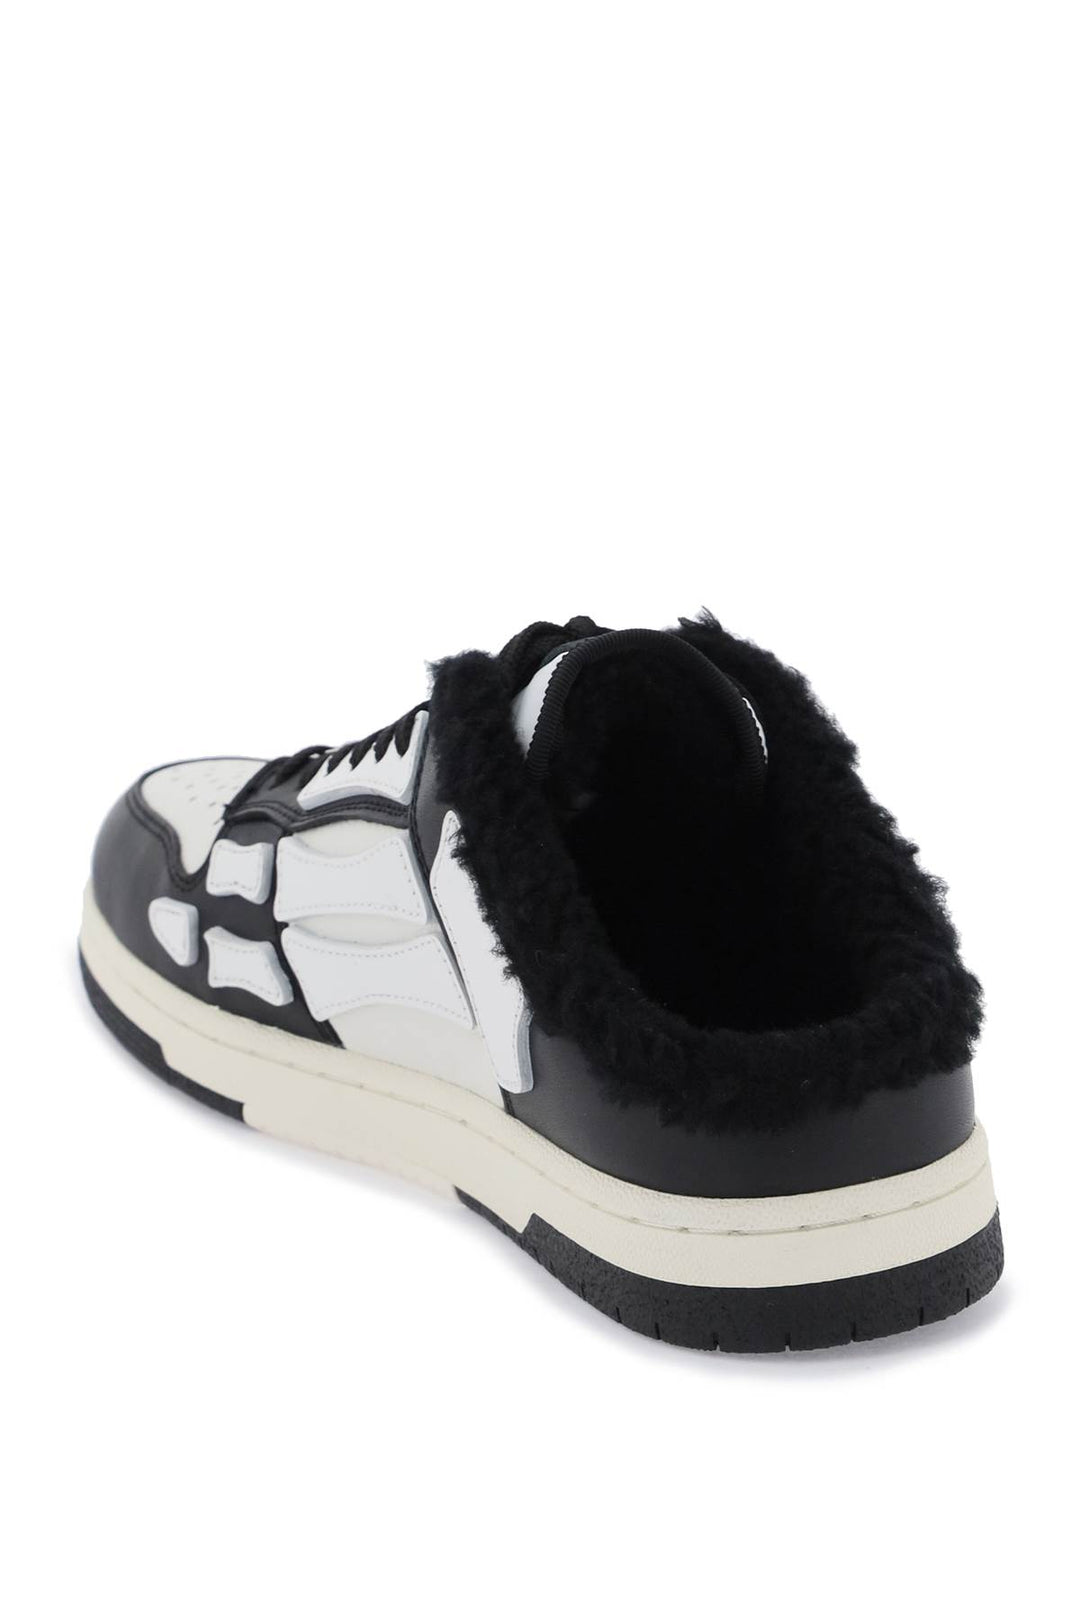 Amiri Skeltop Mule Sneakers   White